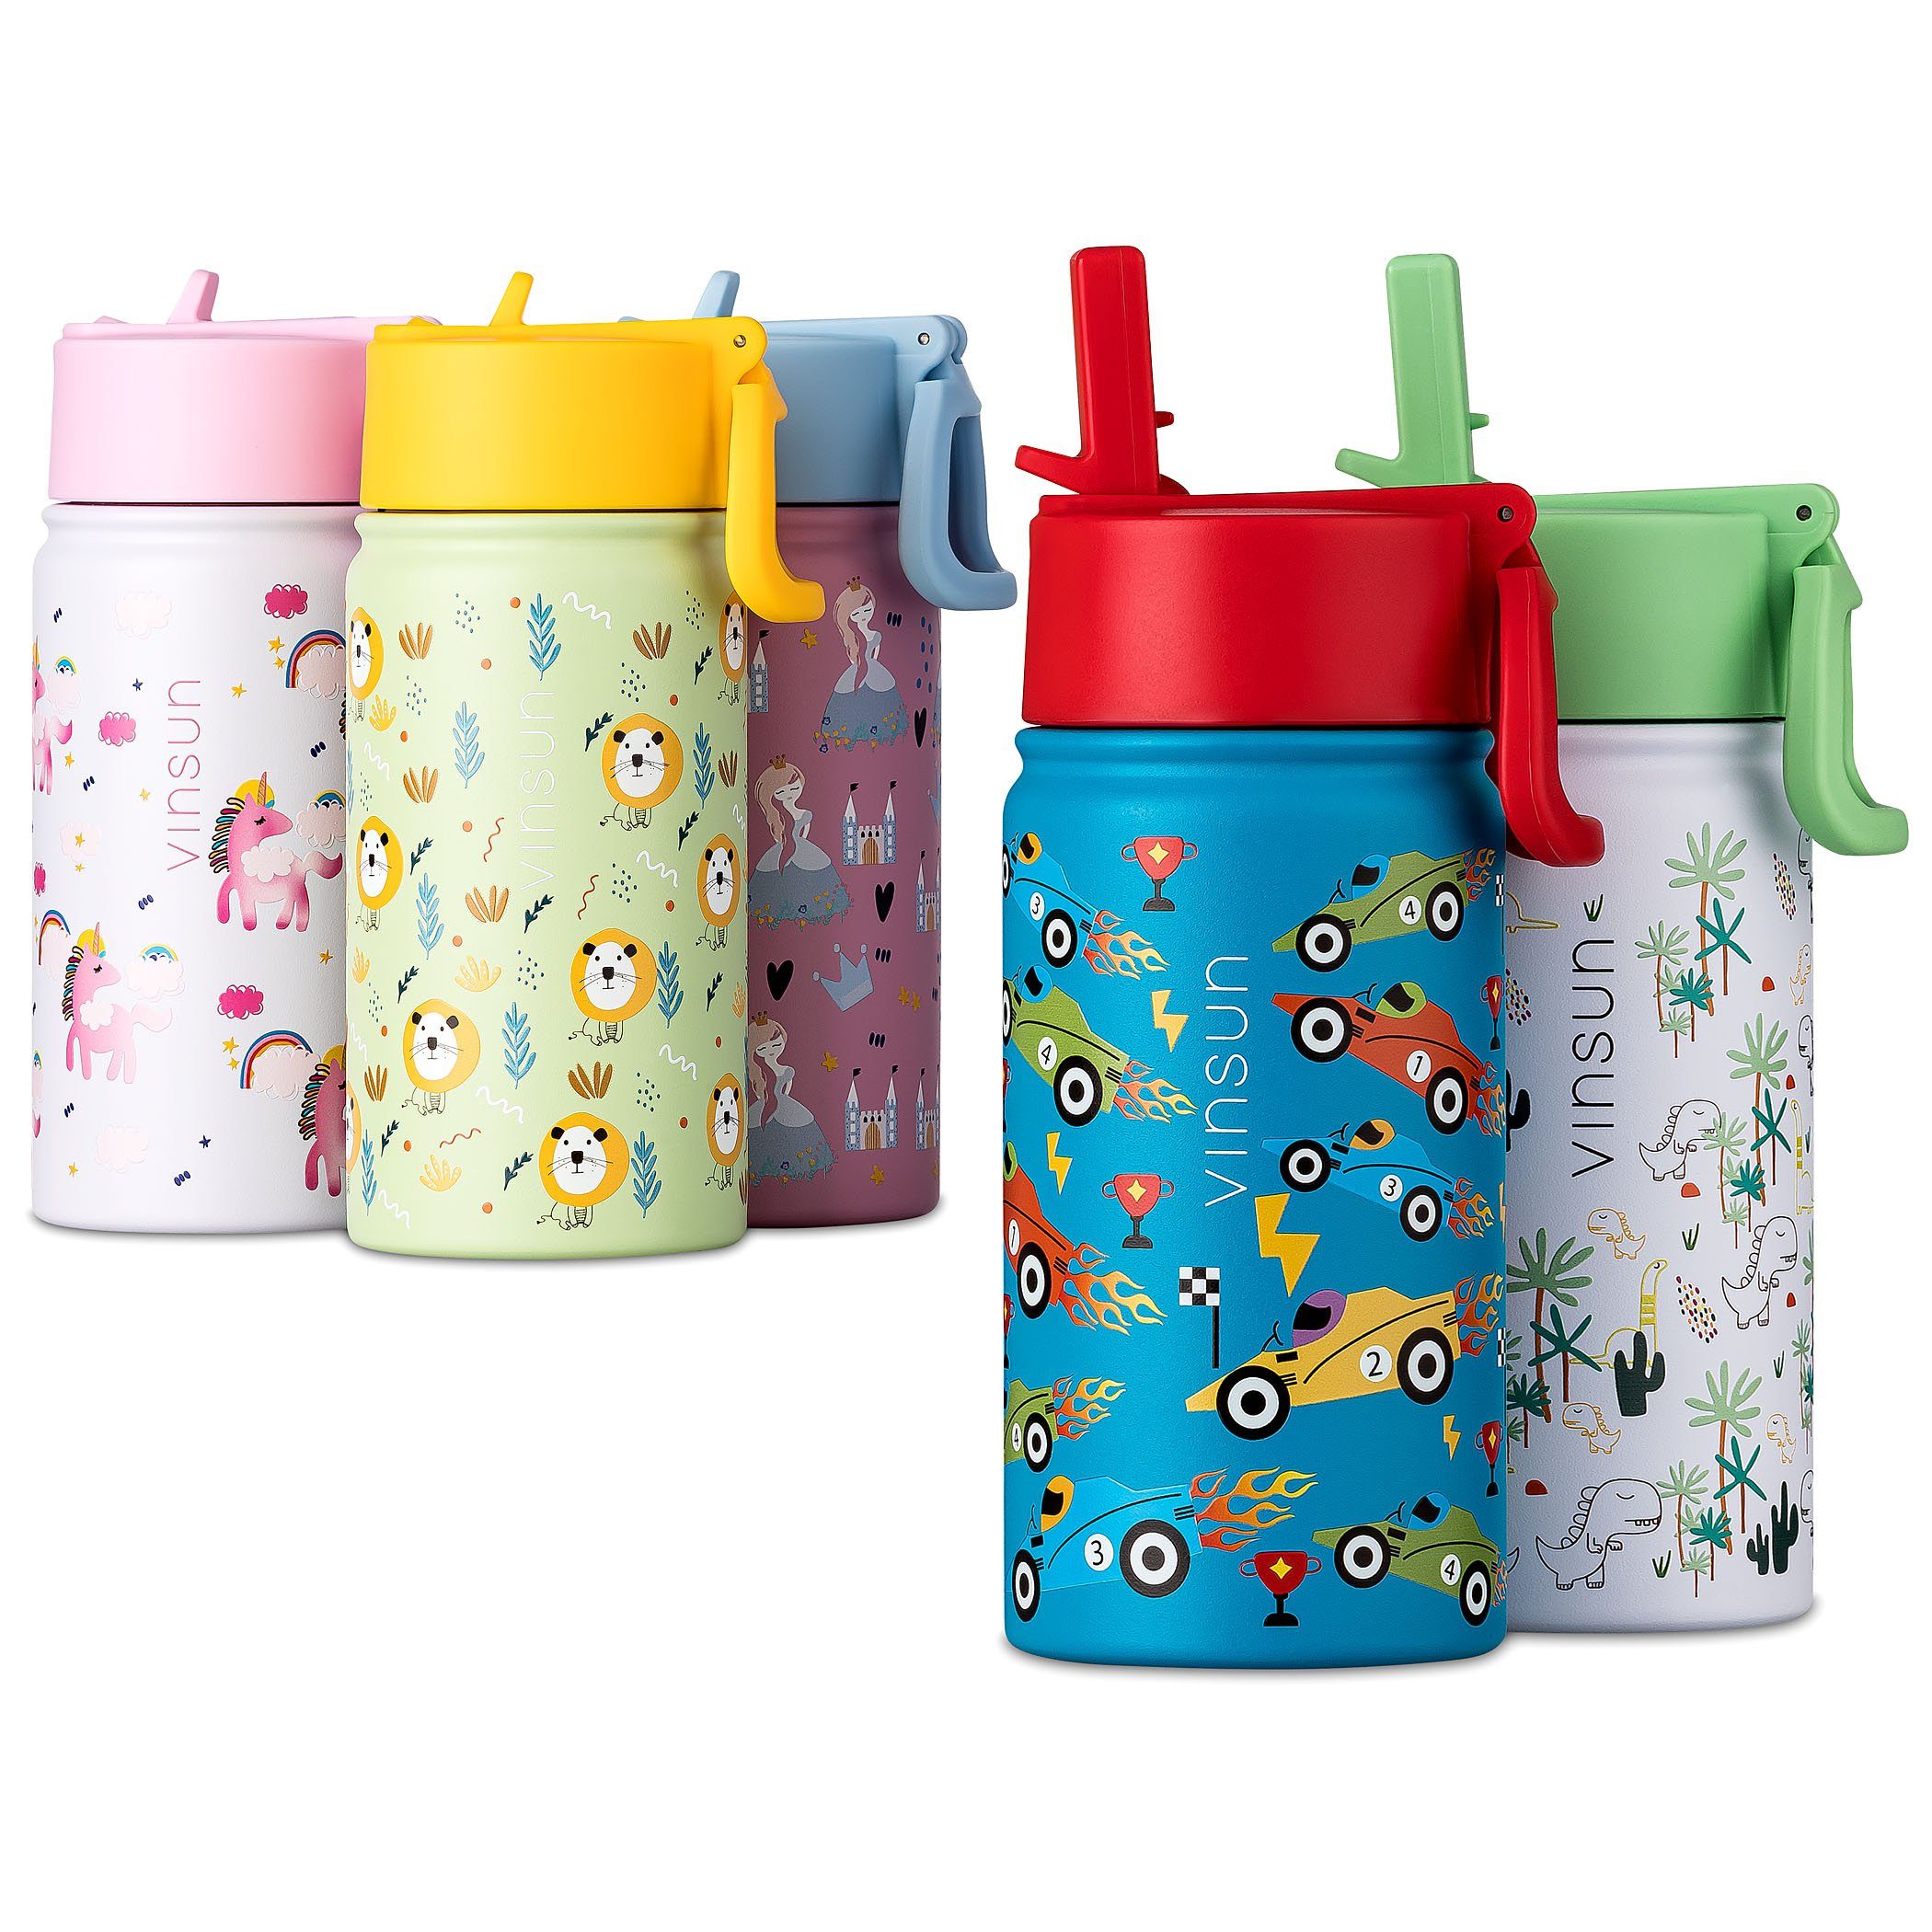 Vinsun Trinkflasche Trinkflasche Kinder 350ml - Auslaufsicher mit Strohhalm - Rennauto, BPA frei, auslaufsicher, bruchsicher, Geruchs- und Geschmacksneutral